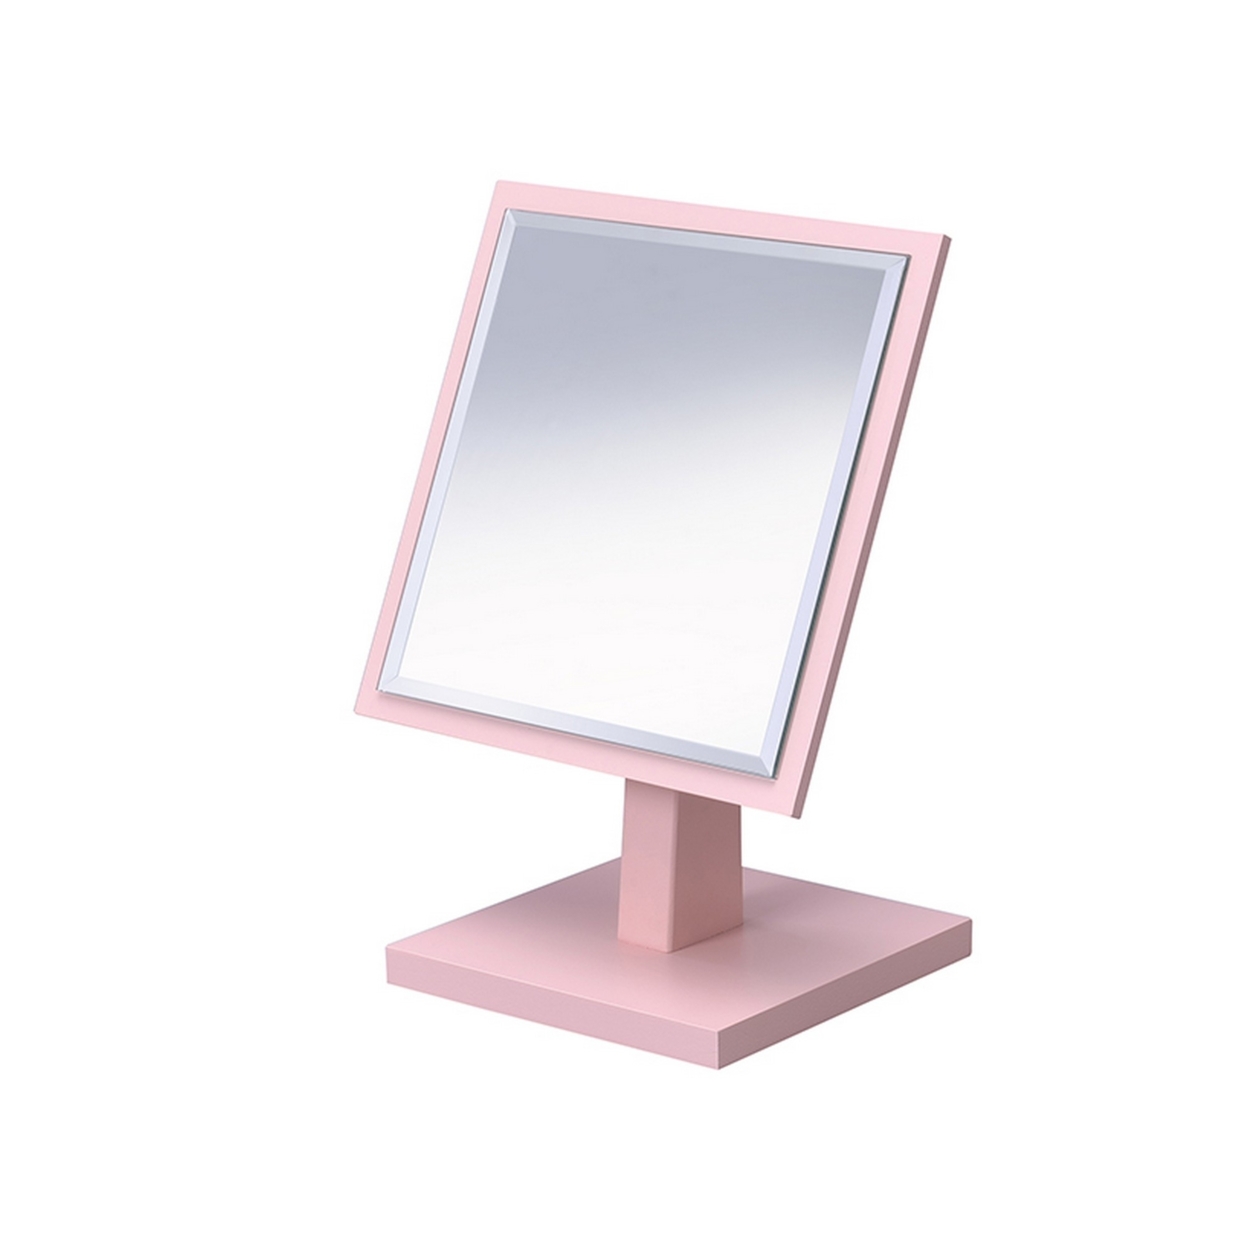 Beveled Mirror With Square Encasing And Pedestal Base, Pink- Saltoro Sherpi